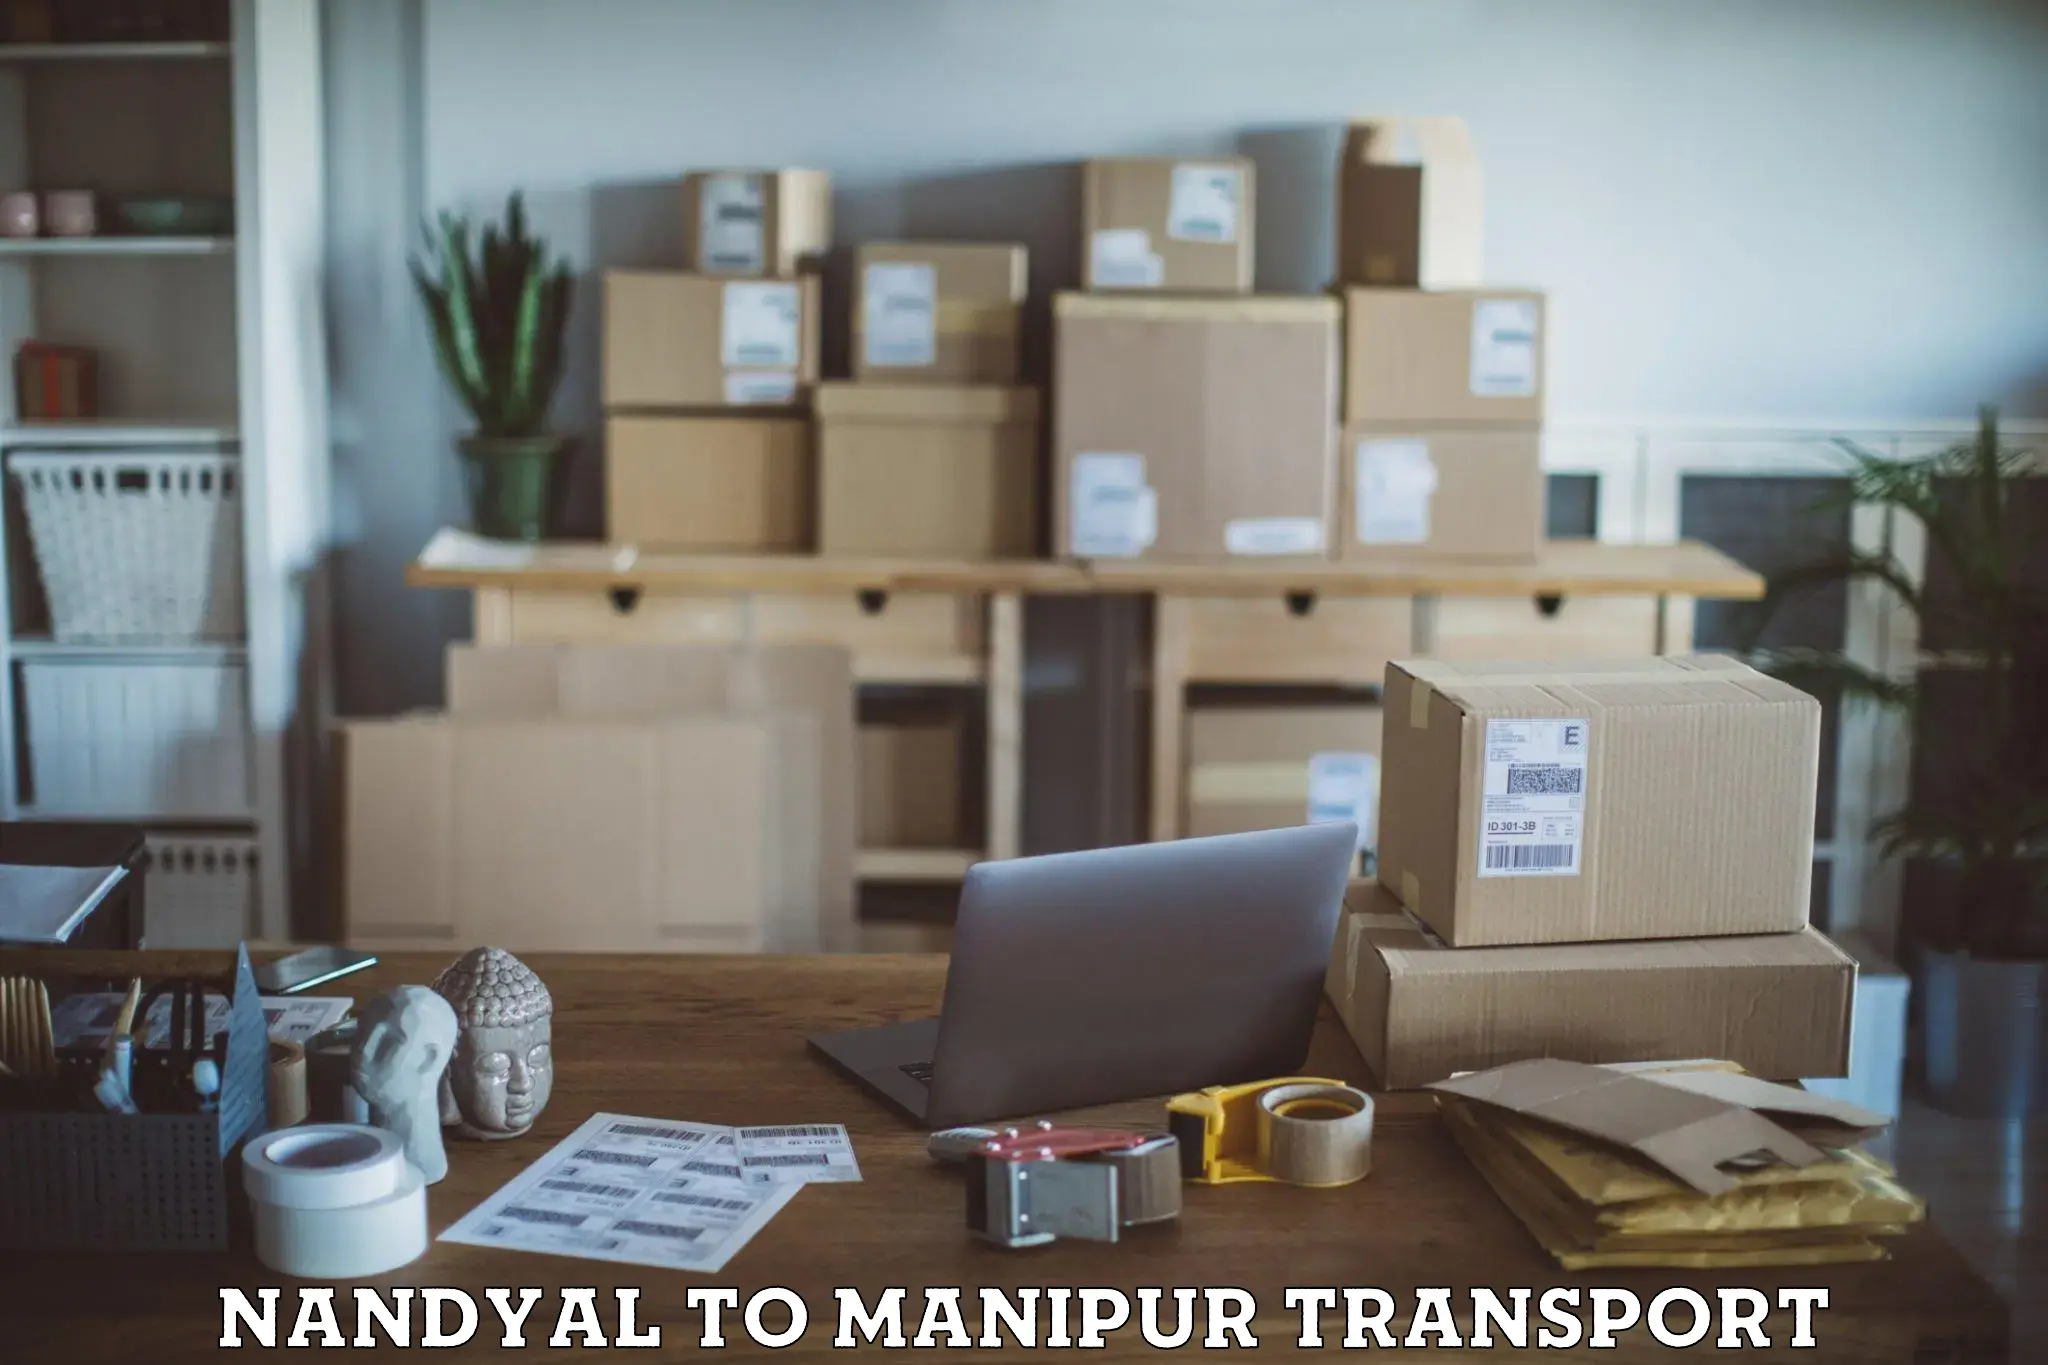 Transport services Nandyal to Chandel